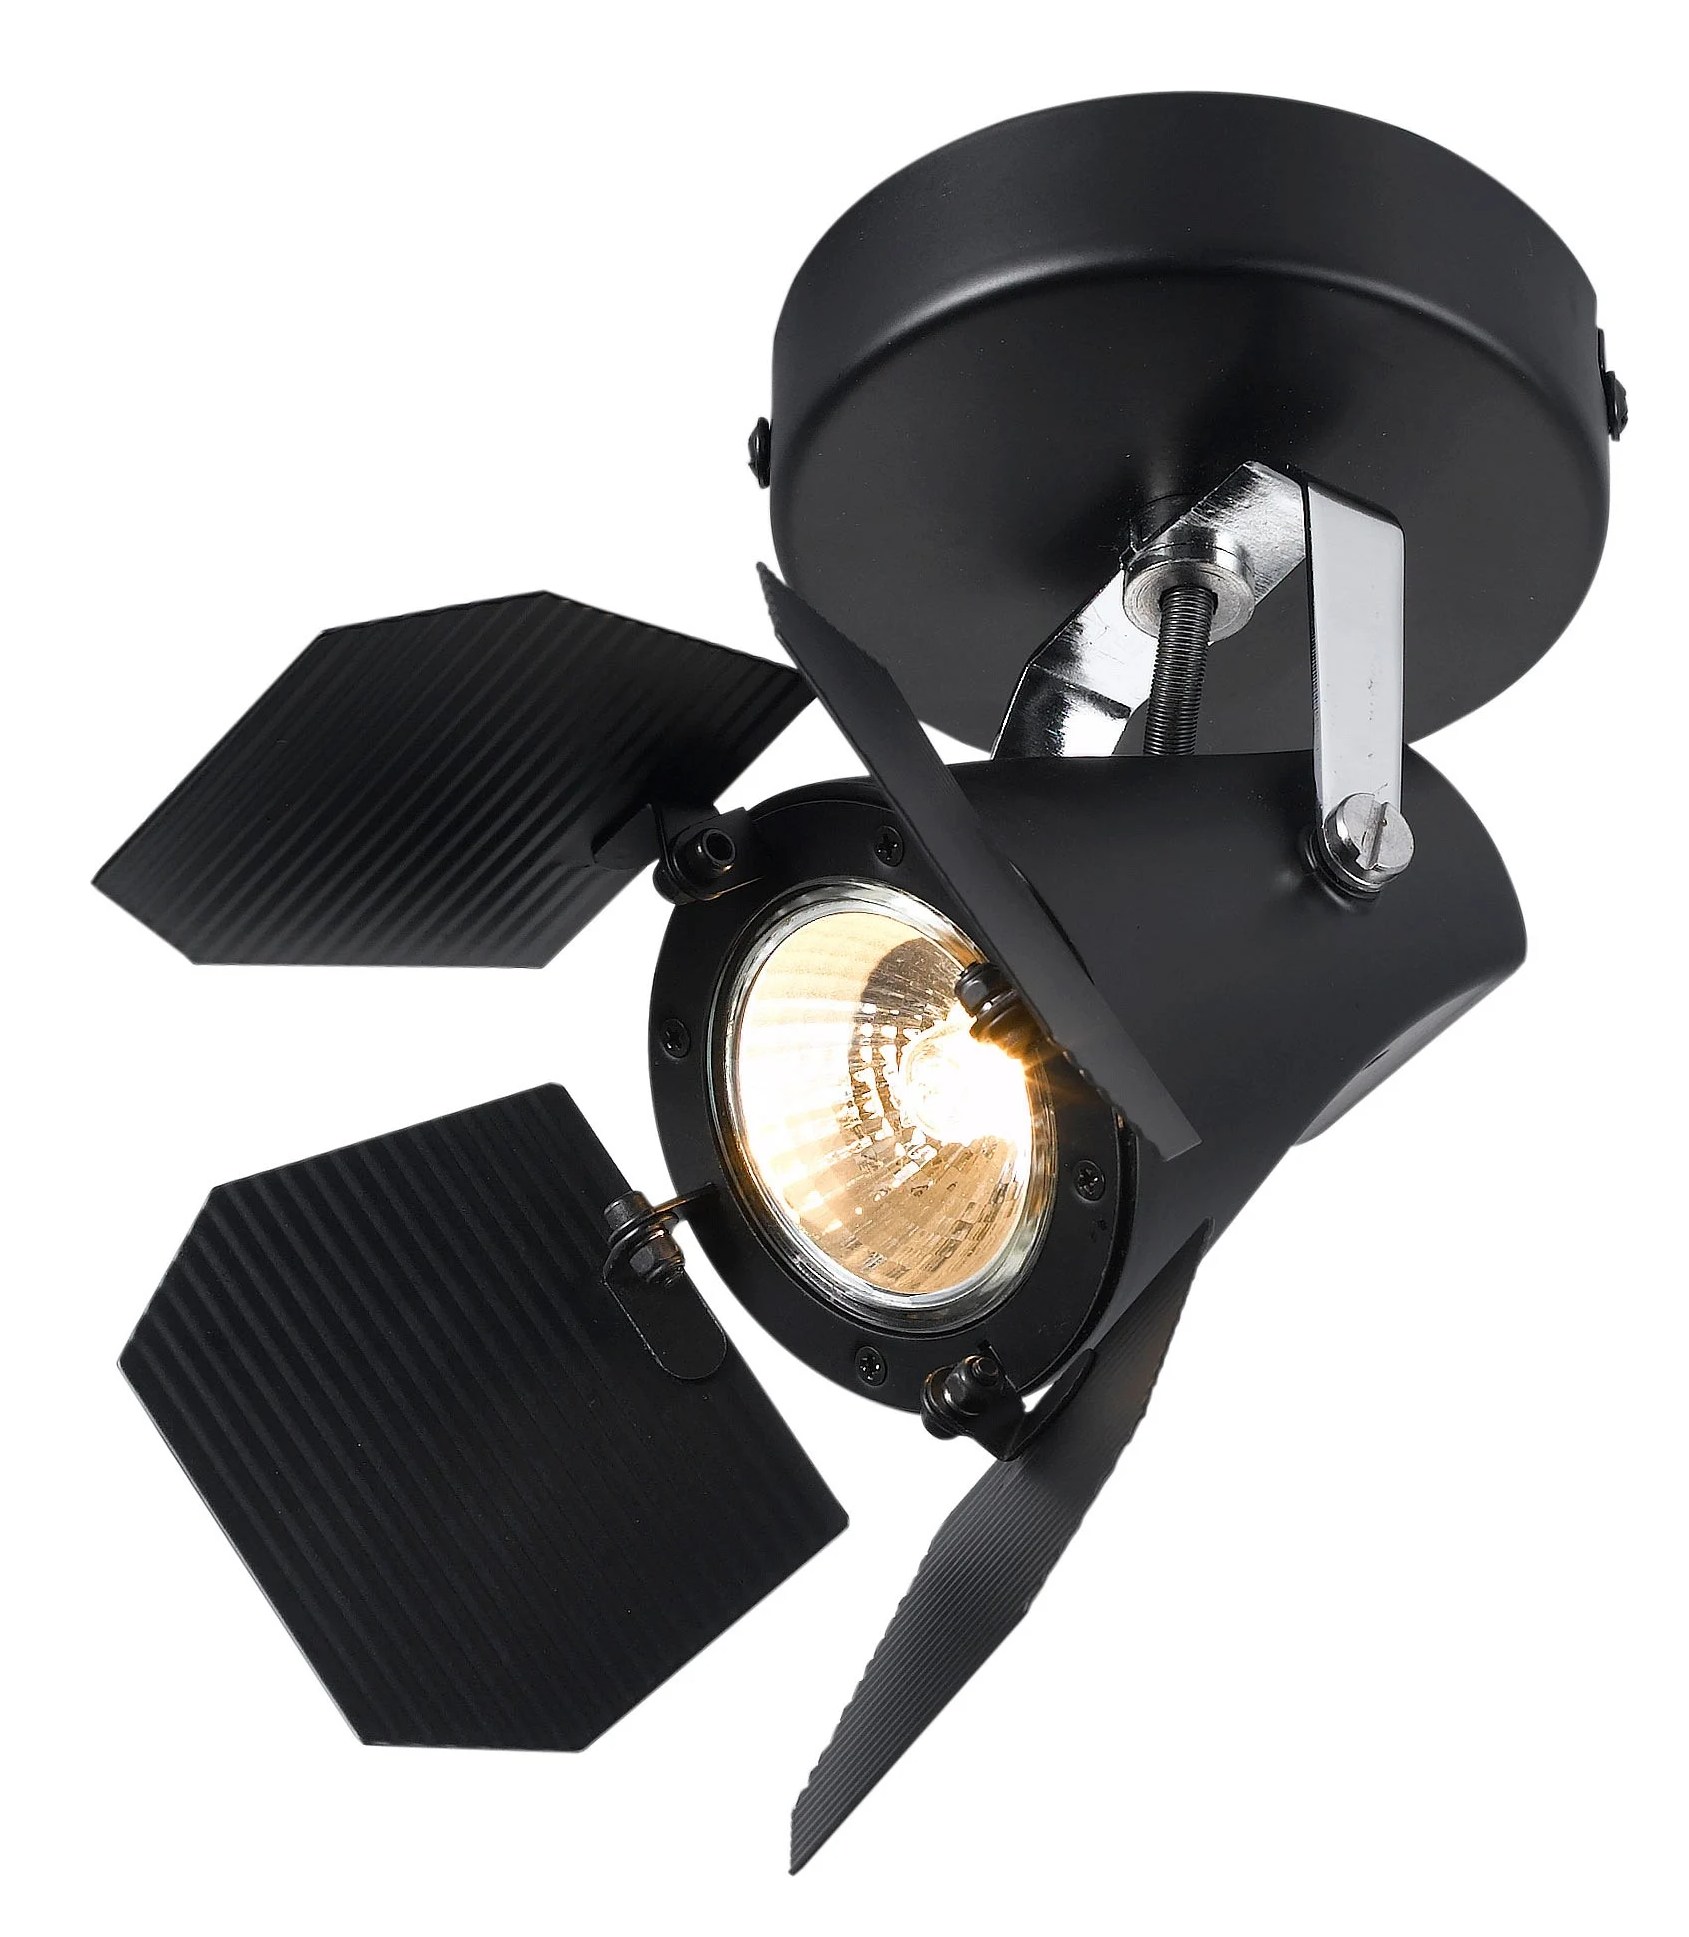 Прожектор потолочный. Спот Arte Lamp Cinema a3092ap-1bk. A3092ap-1bk. Спот Cinema loft2095-m. A3092ap-1bk светильник настенный.